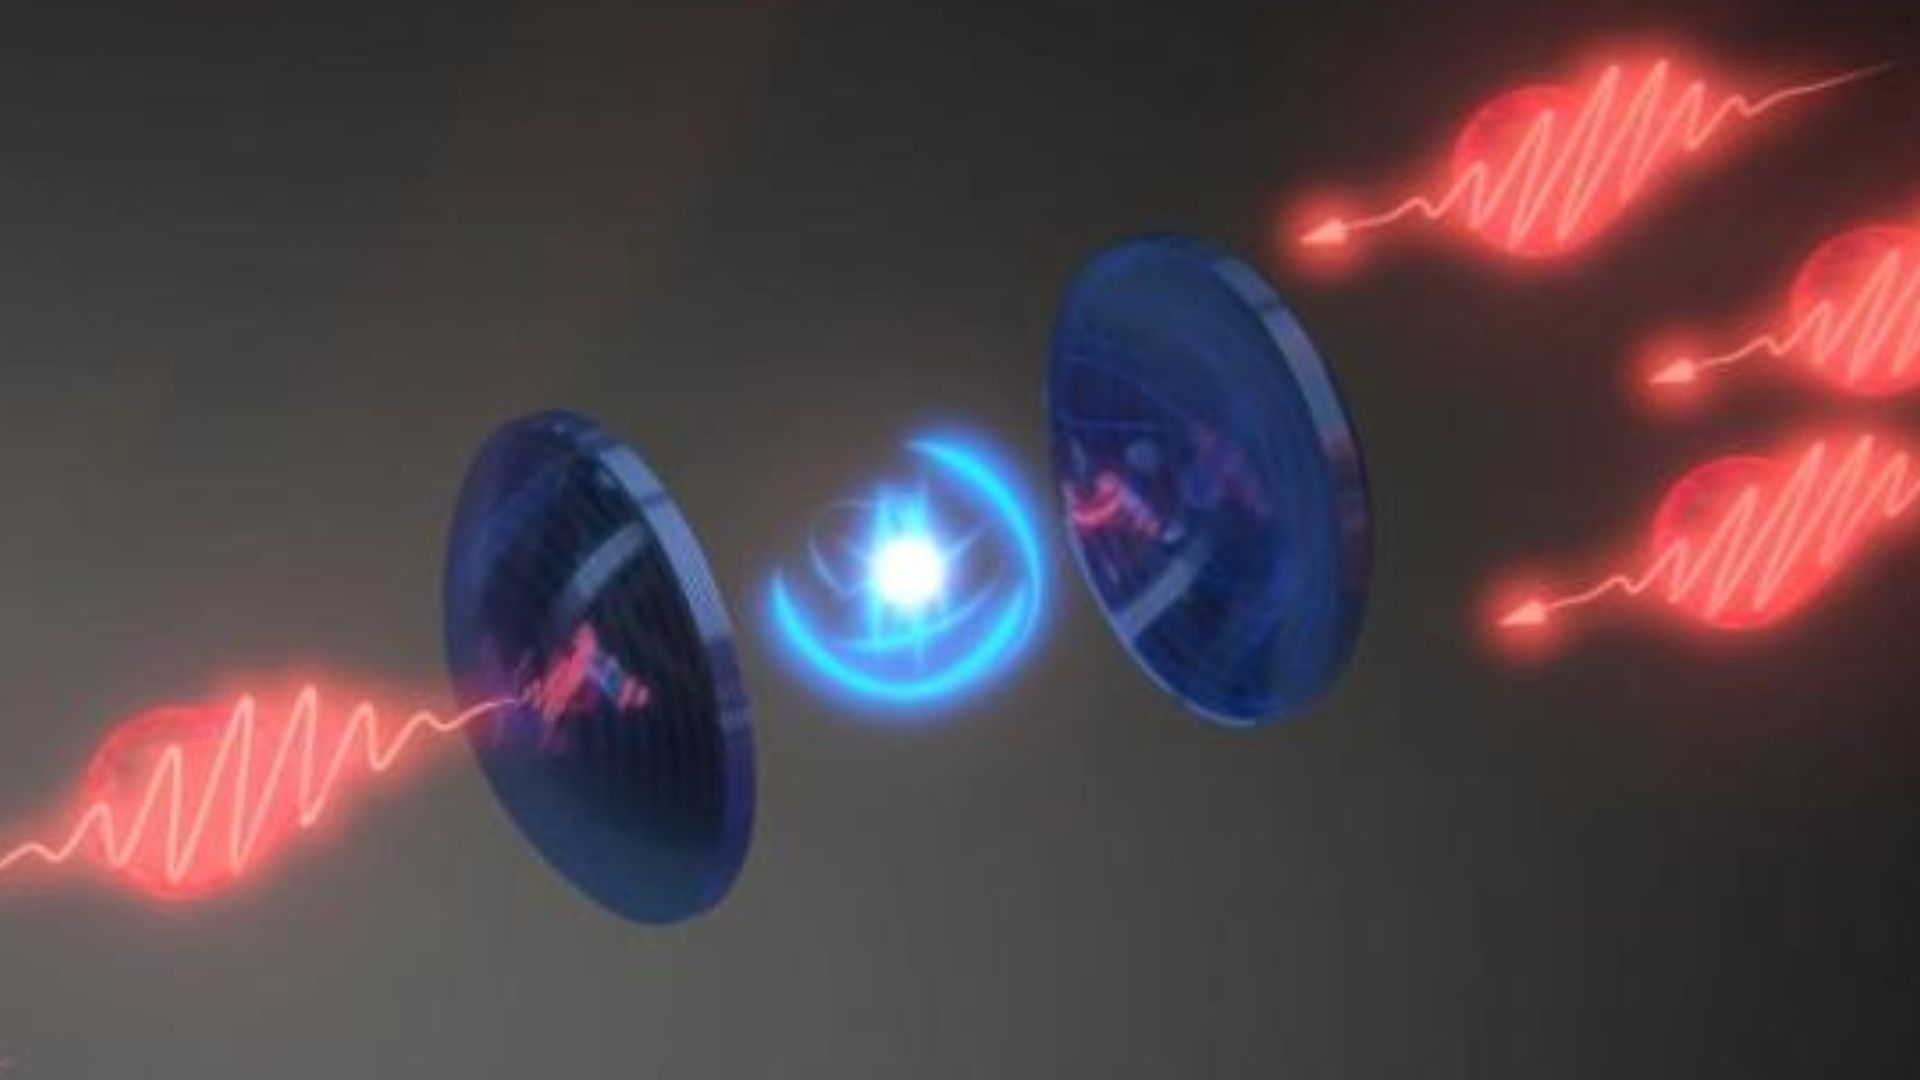 Natuurkundigen hebben voor het eerst licht op kwantumschaal gemanipuleerd